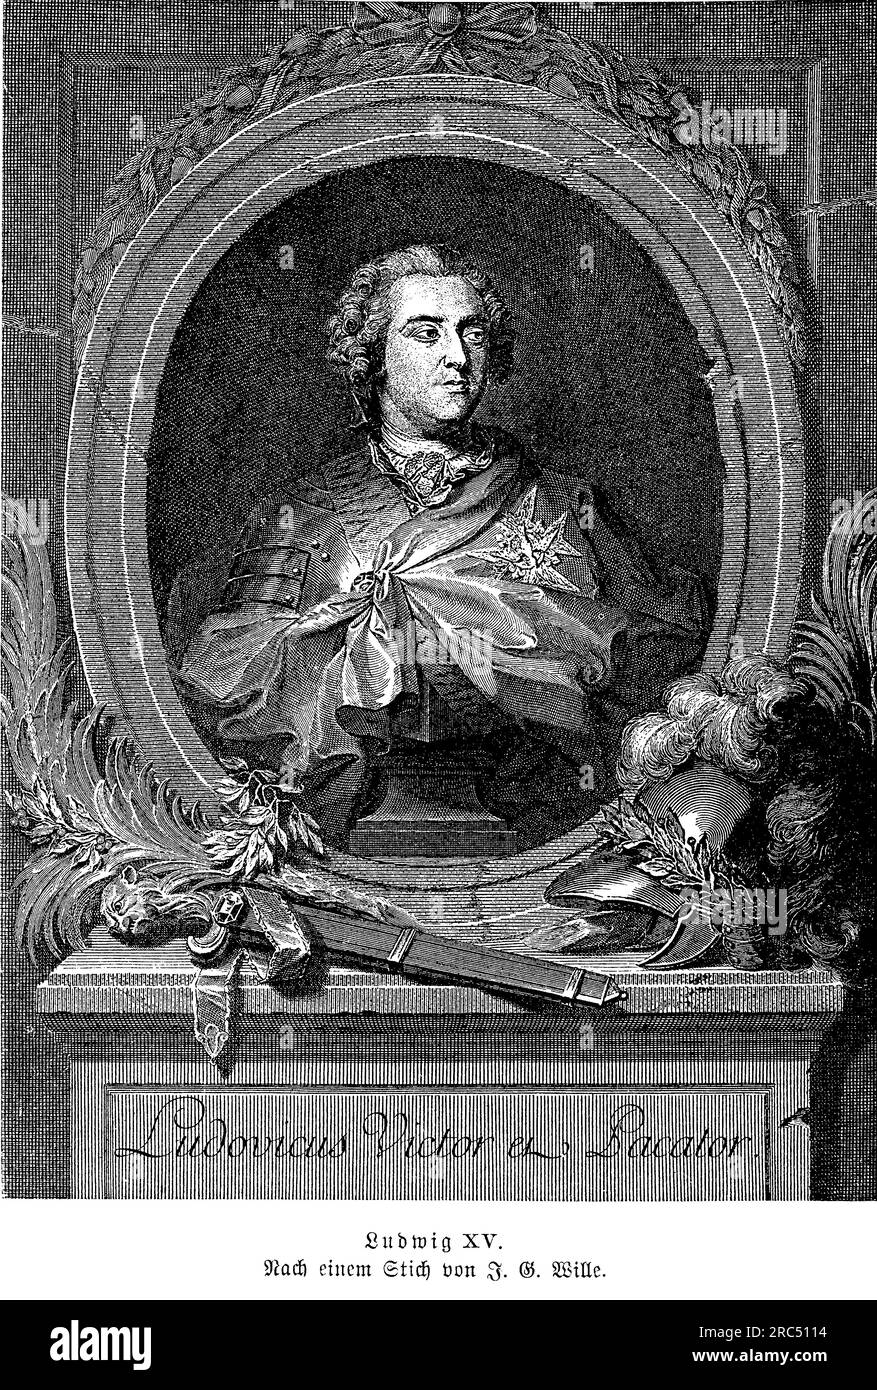 Ritratto di Luigi XV re di Francia dal 1715 fino alla sua morte nel 1774, rendendolo uno dei monarchi più longevi della storia europea. Succedette al suo bisnonno, Luigi XIV, all'età di cinque anni, e durante il suo regno la Francia sperimentò significativi cambiamenti culturali, economici e politici. Luigi XV è spesso associato al declino della monarchia francese, in quanto il suo regno fu segnato da numerose sconfitte militari, crisi finanziarie e disordini sociali. Nonostante queste sfide, Luigi XV era un mecenate delle arti e un amante della musica, e sostenne lo sviluppo della cultura francese Foto Stock